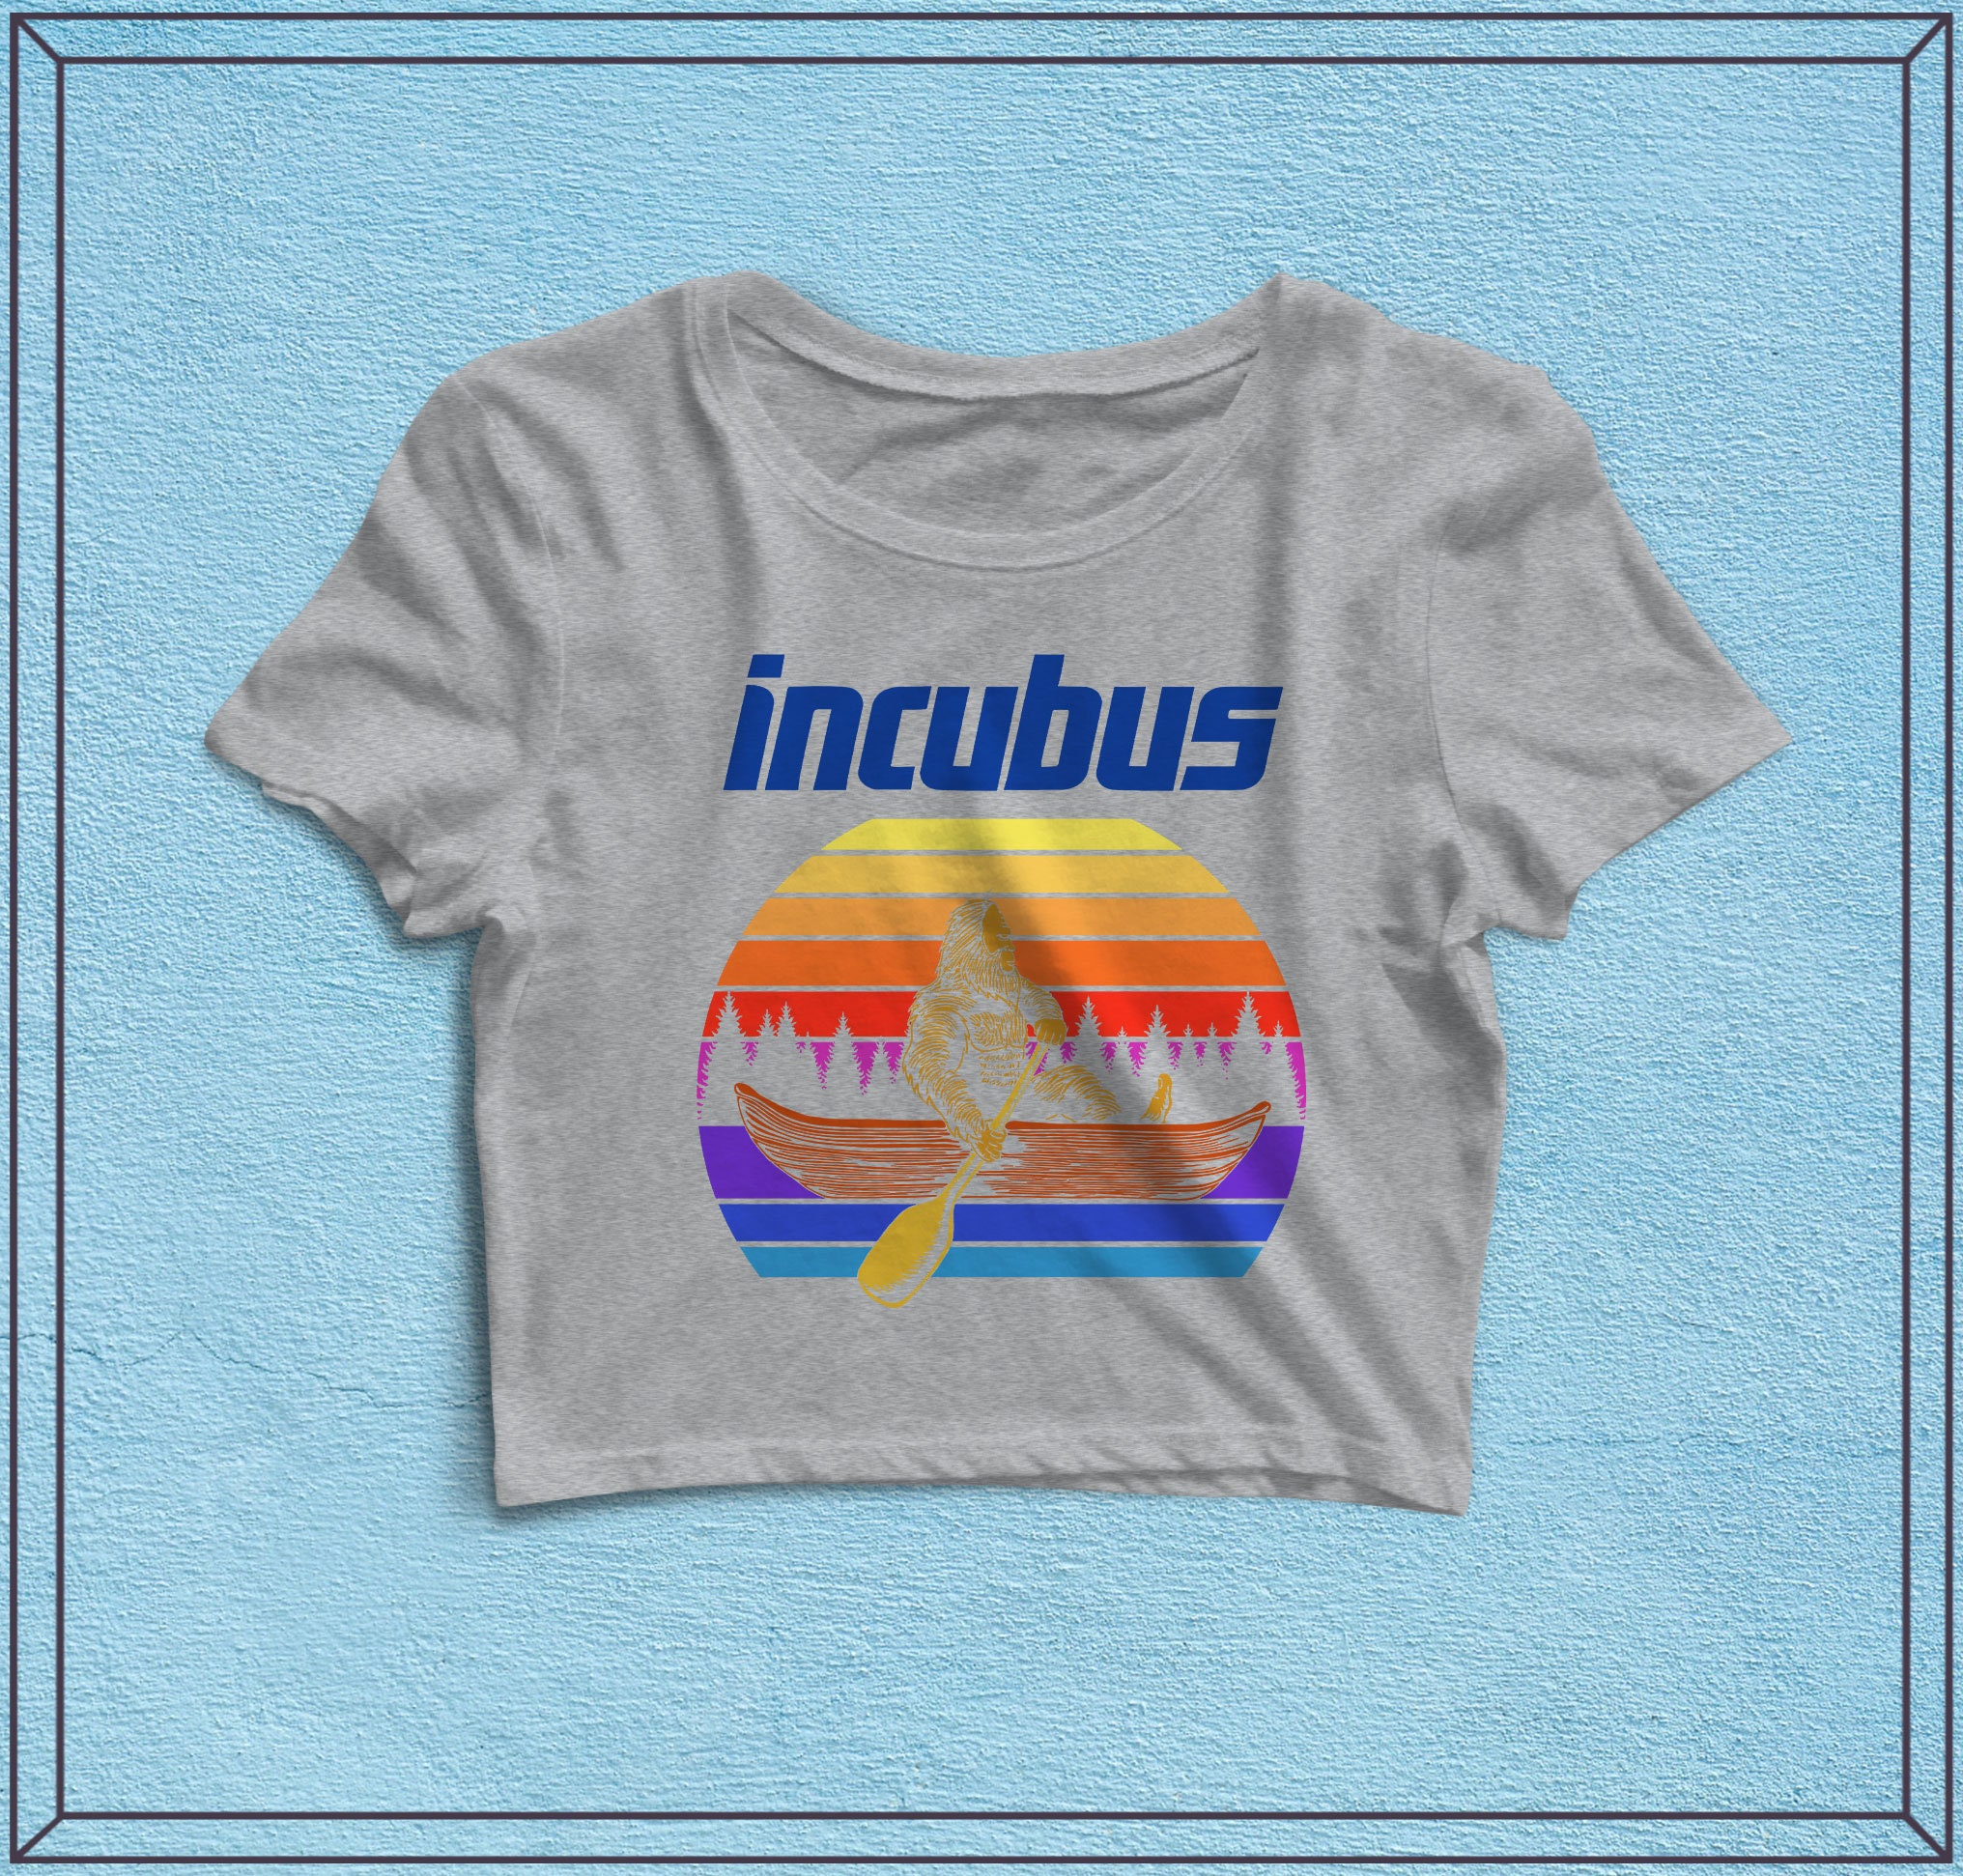 Incubus Tour Crop Top - Music Shirt, Women Shirts